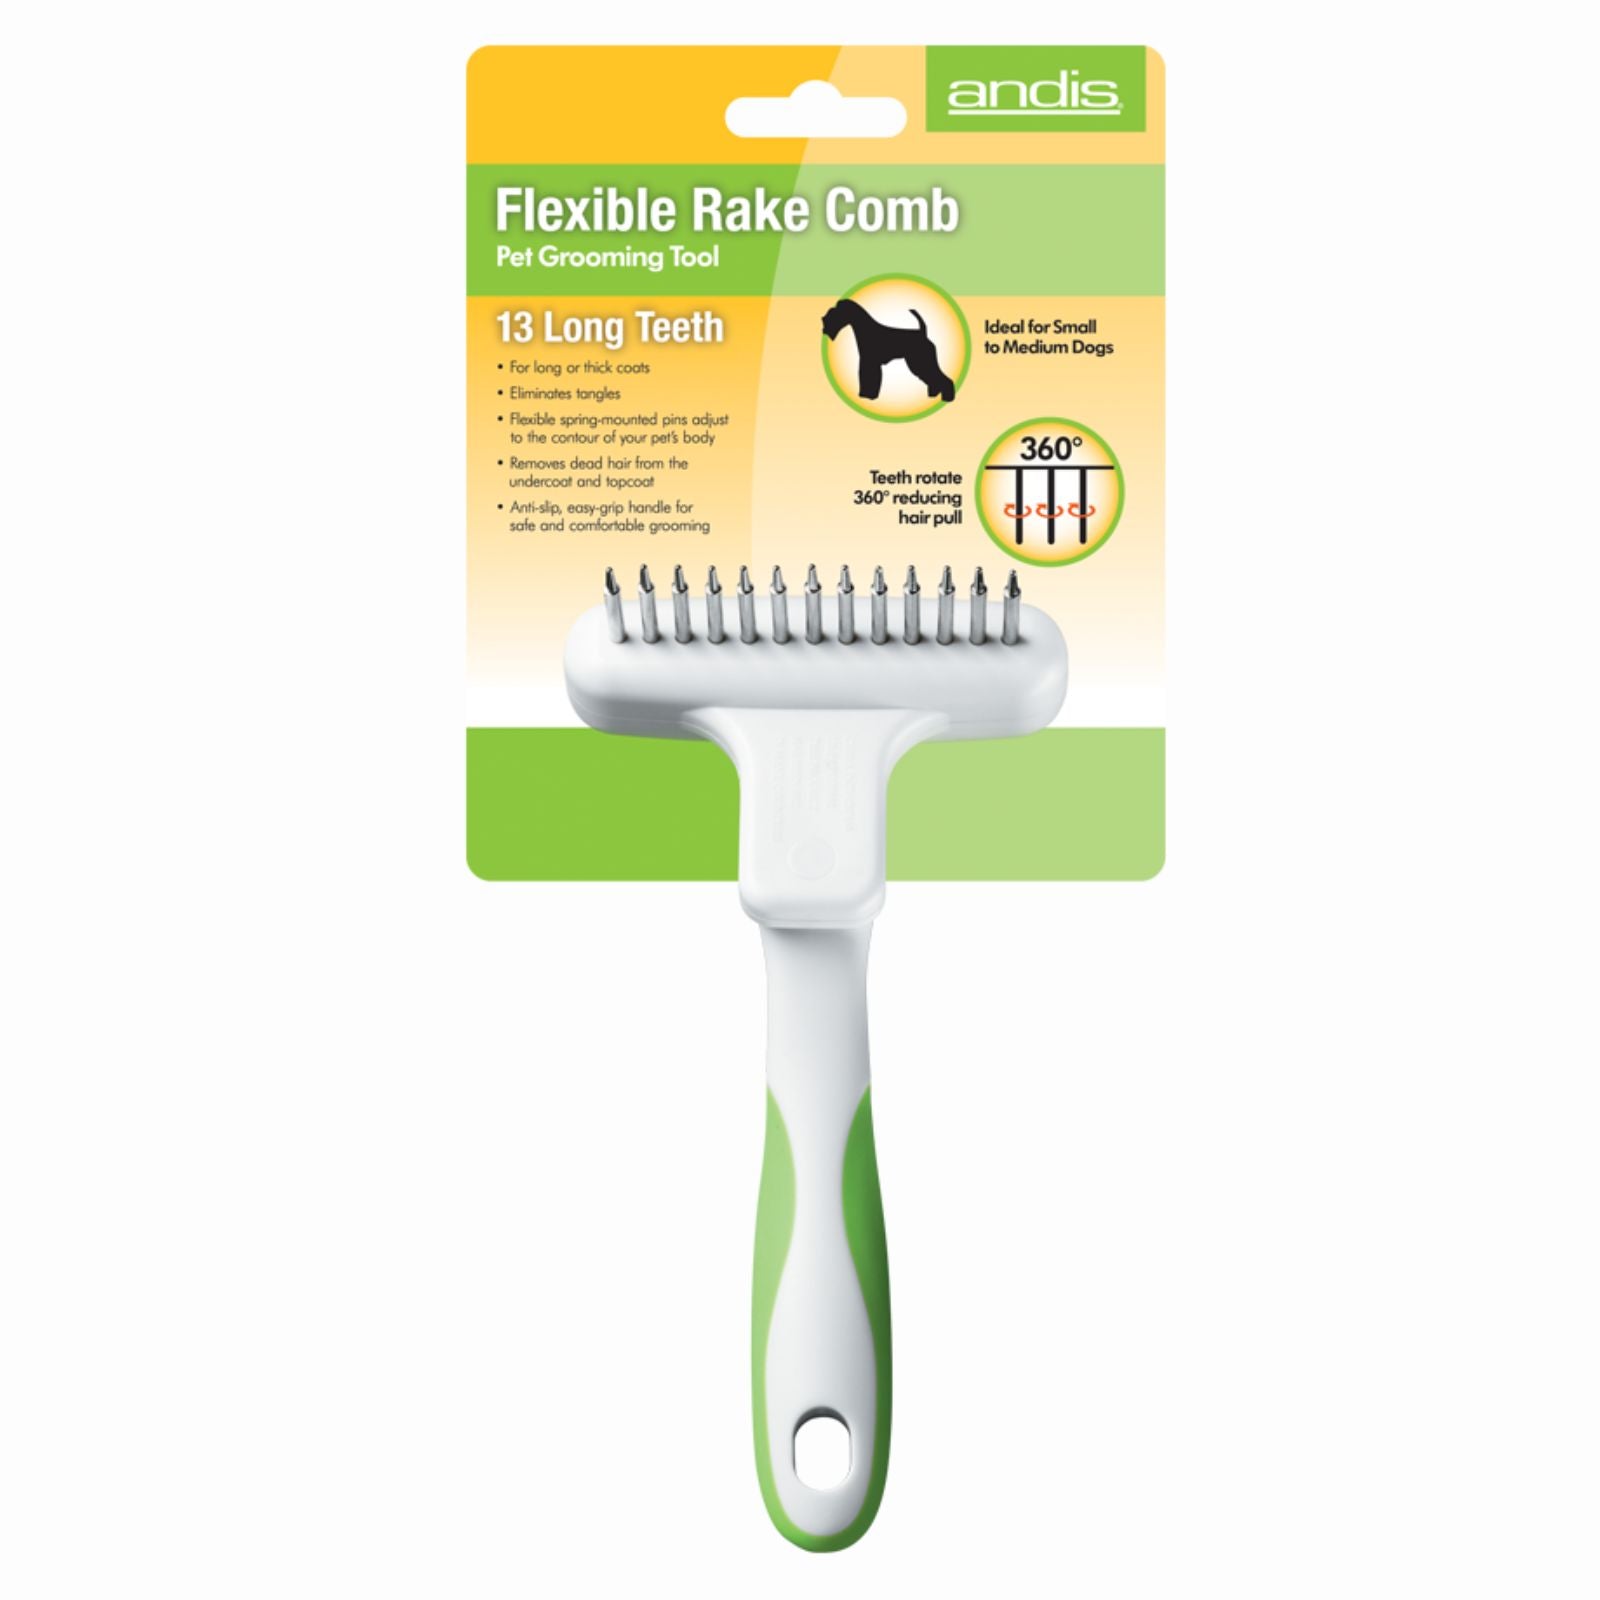 ANDIS Flexible Rake Comb Pet Grooming Tool